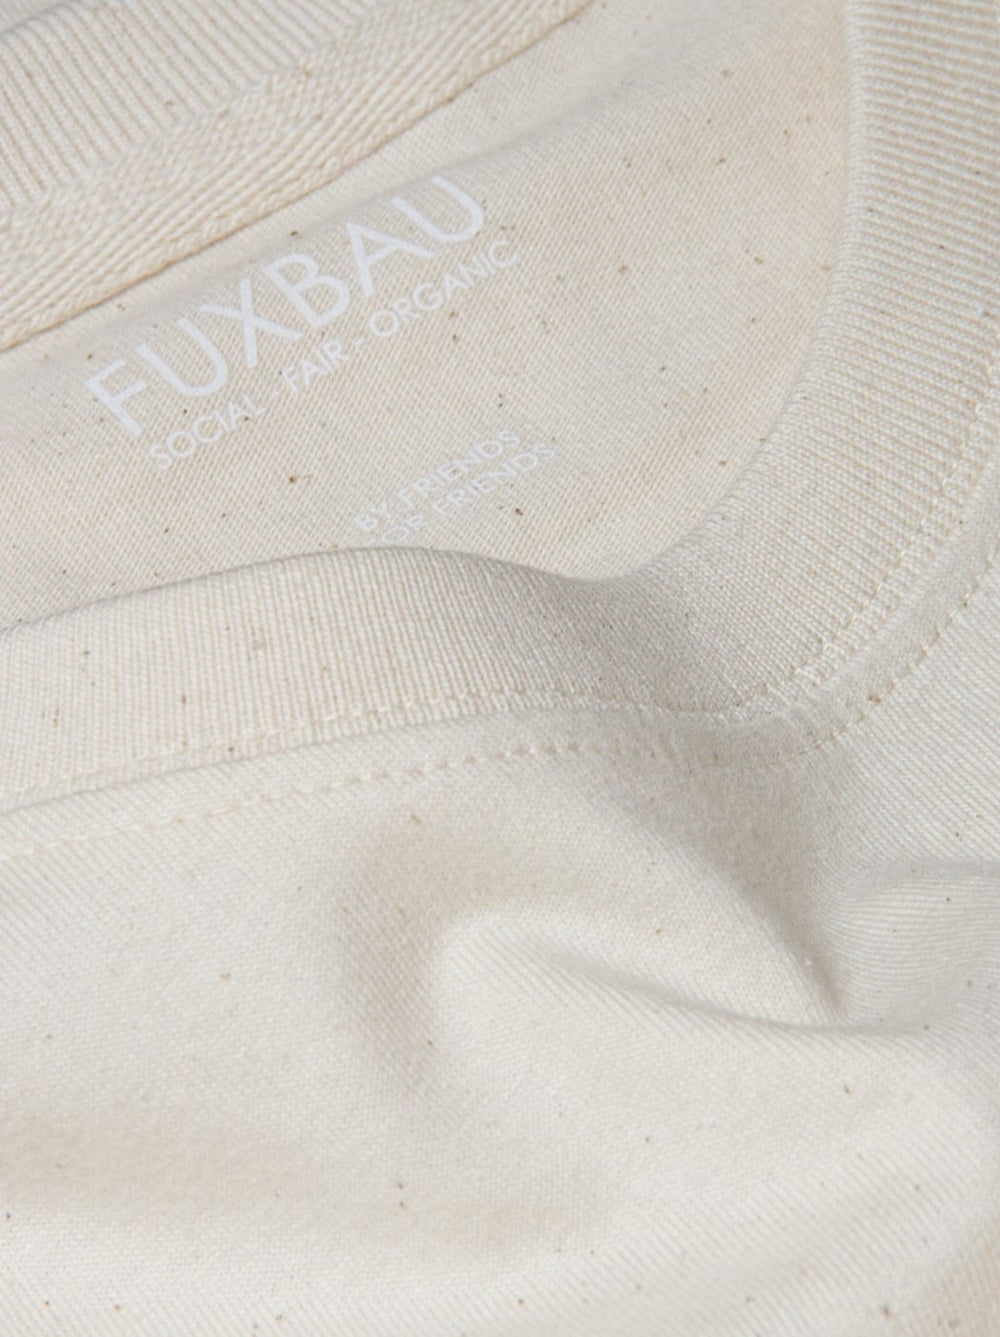 Imprint im natur ungefärbten Basic T-Shirt im 3er Pack FUXBAU social - fair - organic